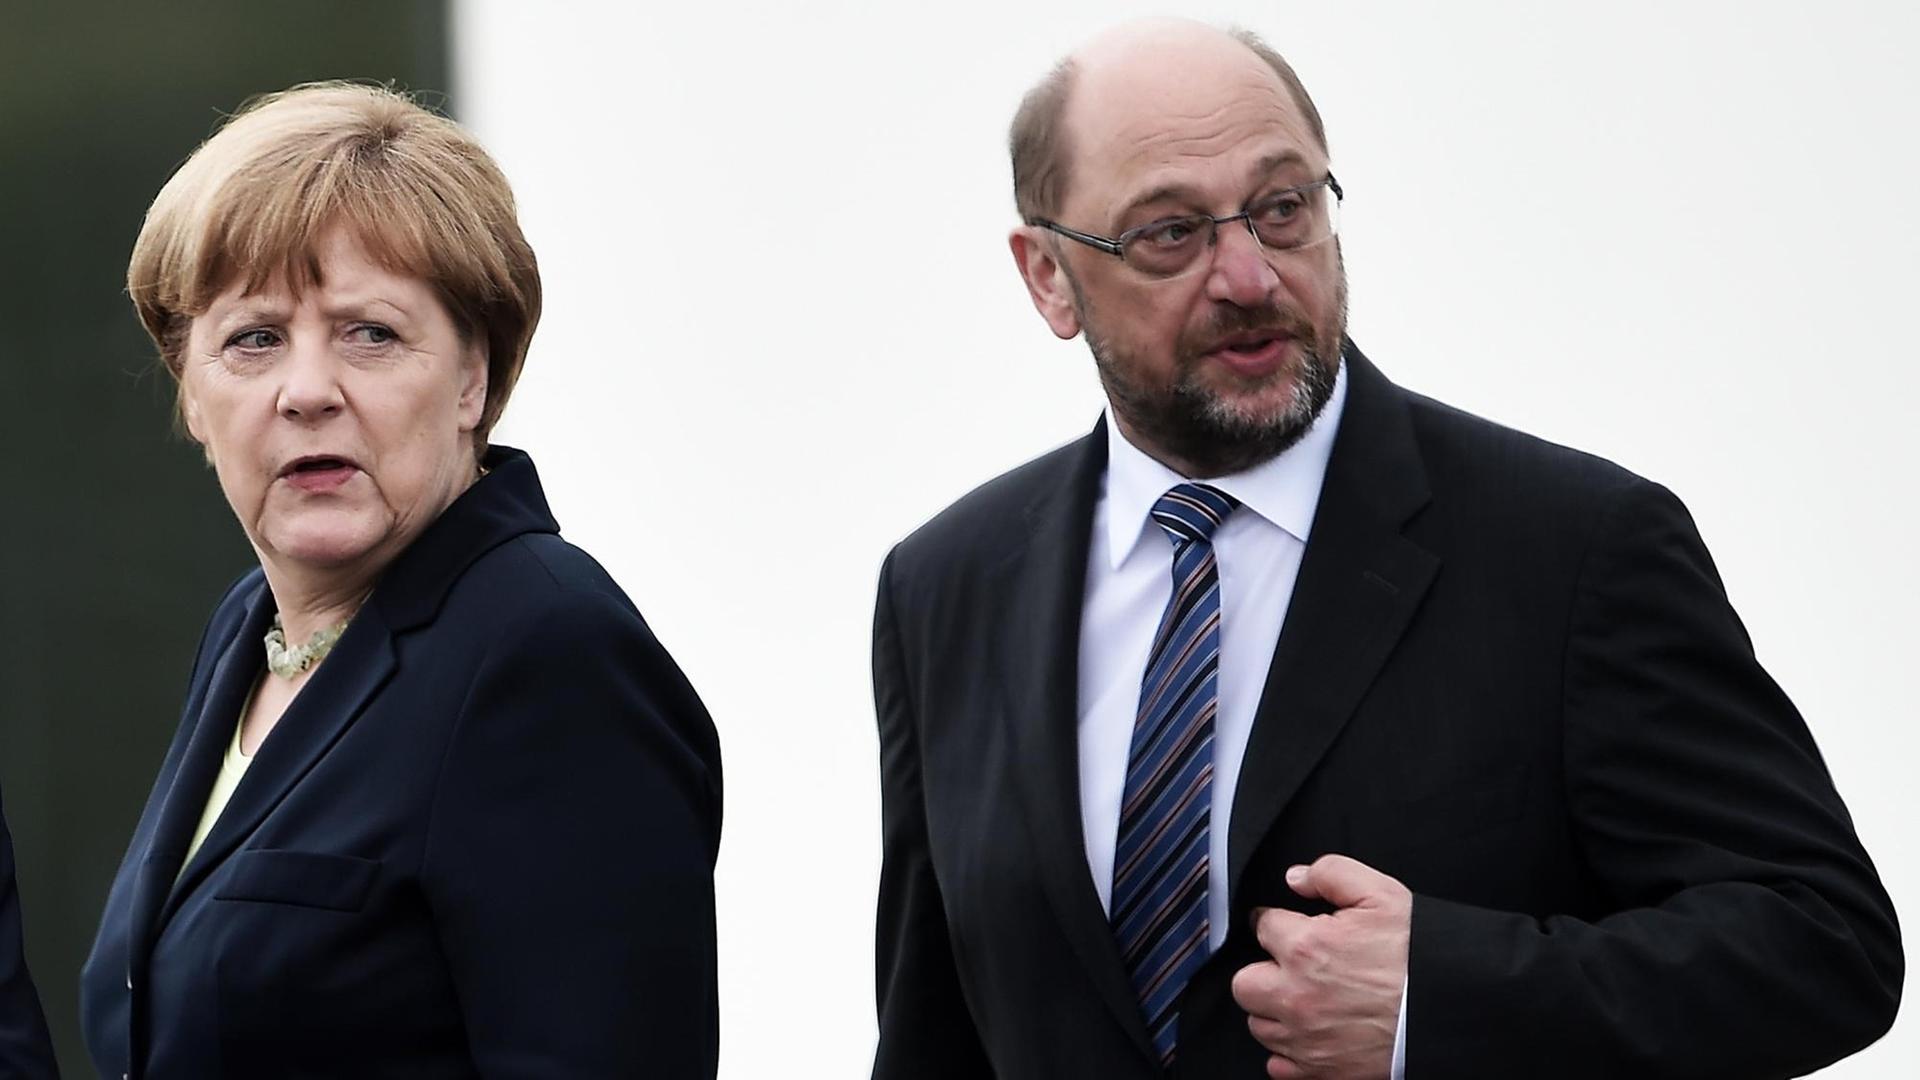 Angela Merkel (CDU) und Martin Schulz (SPD) stehen nebeneinander.